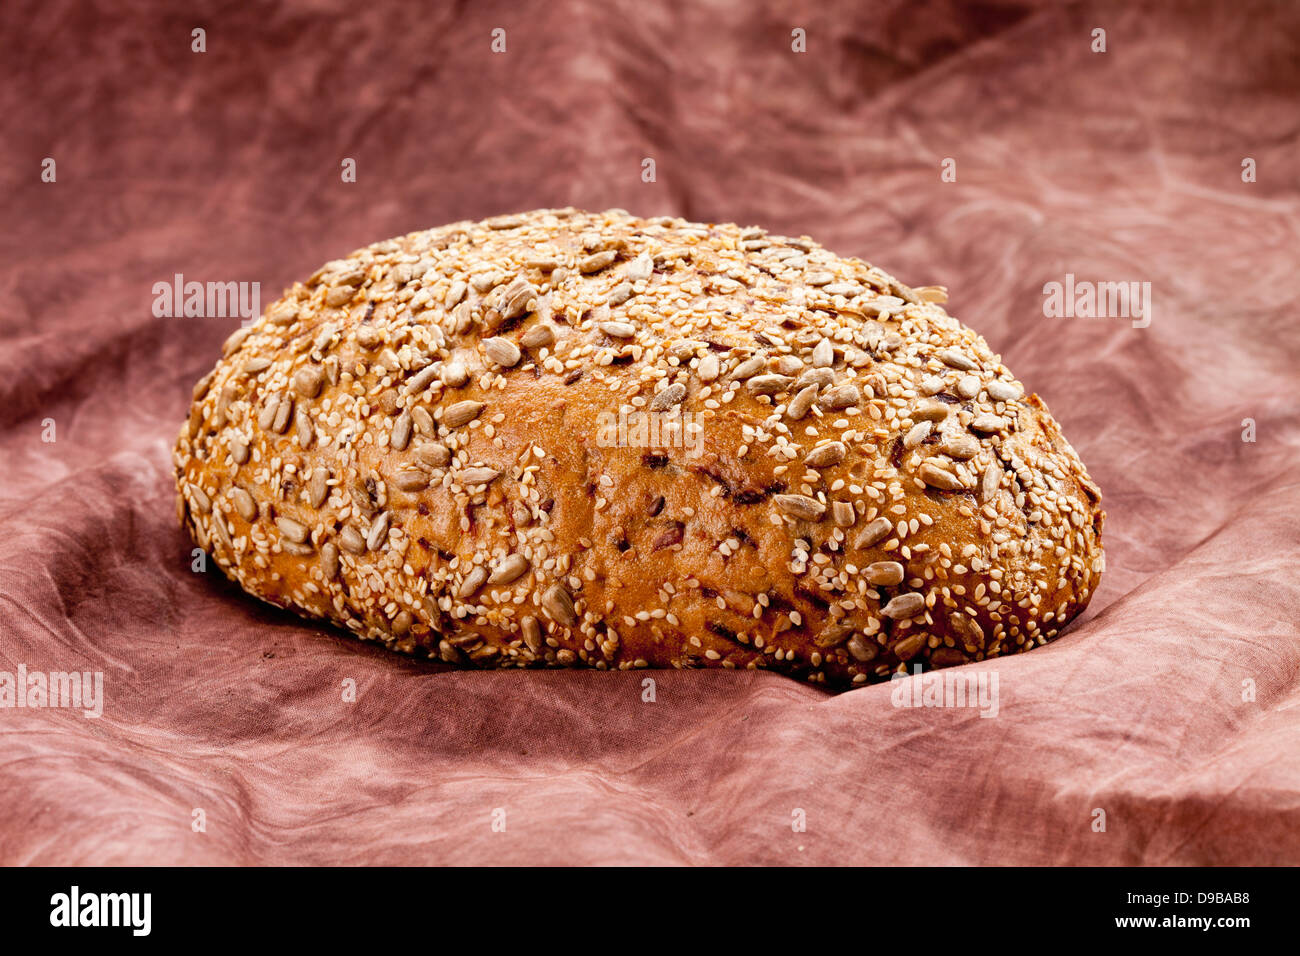 Le pain de grains entiers avec des carottes, Close up Banque D'Images